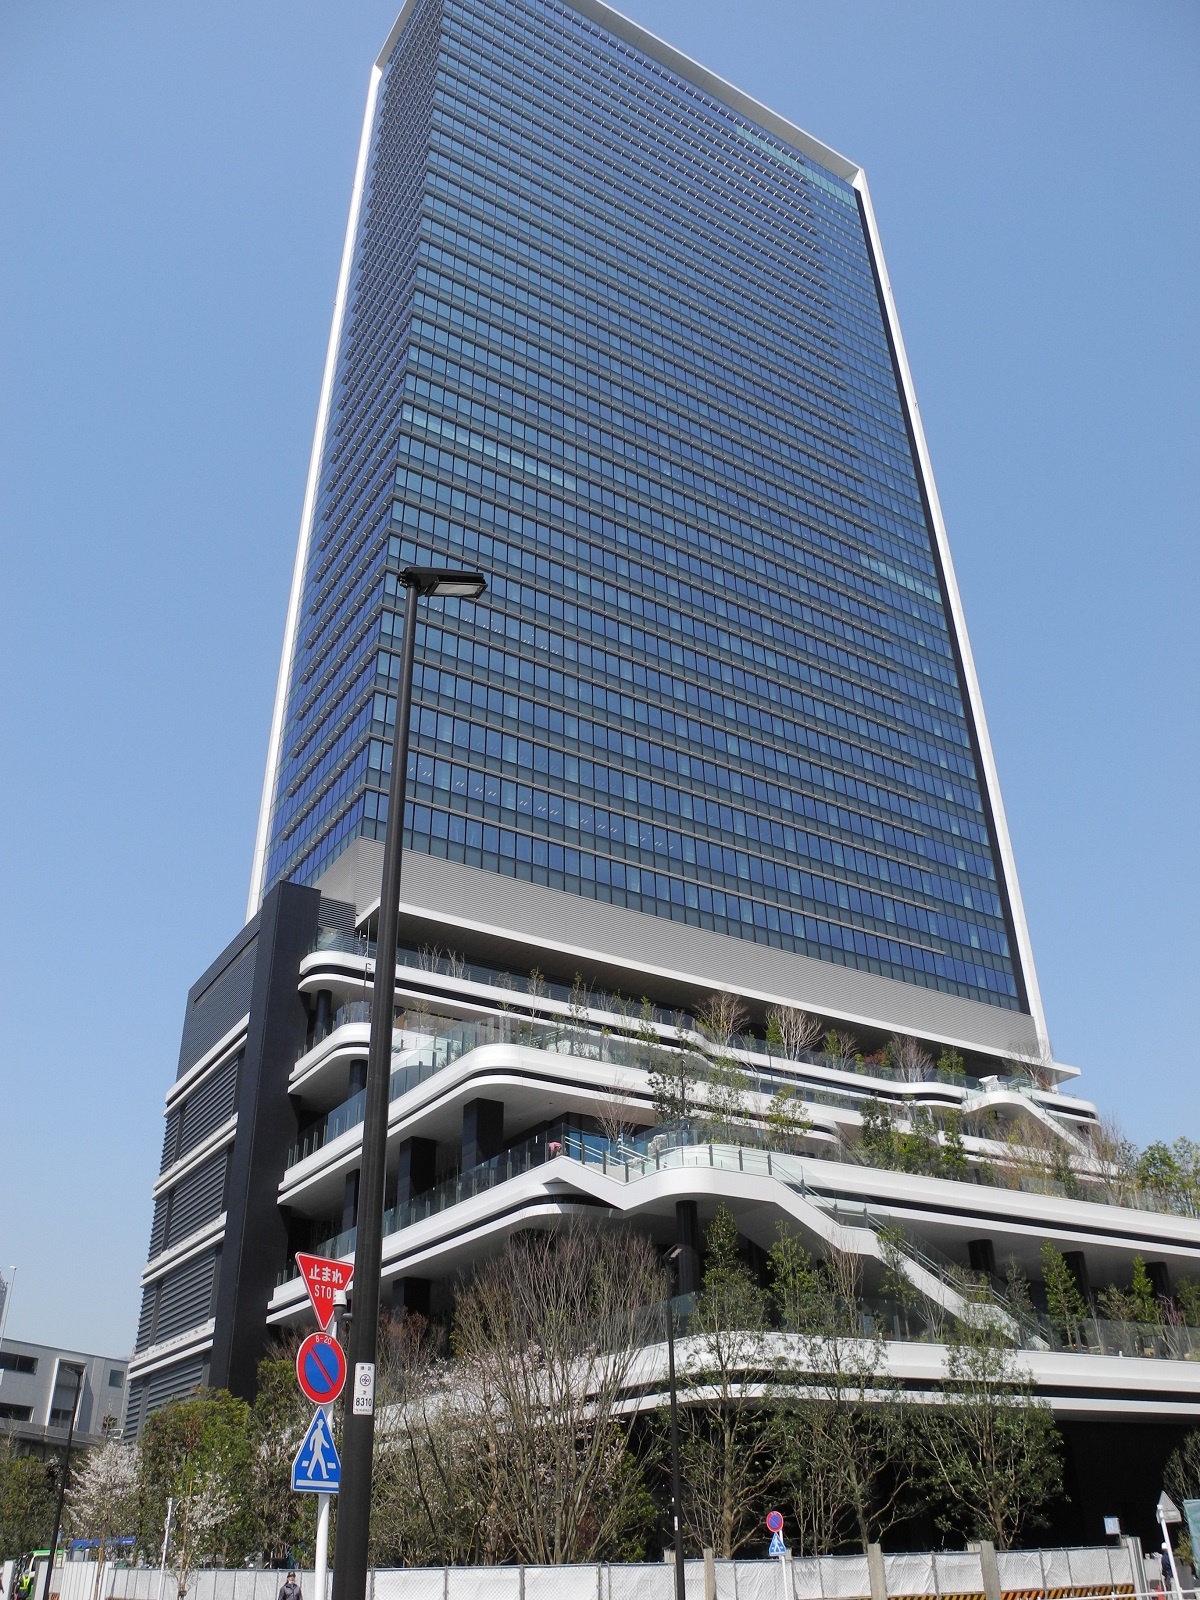  （写真）「東京ポートシティ竹芝」で今年5月に完成する予定のオフィスタワー。メーンテナントとしてソフトバンクが汐留地区から本社を移す。低層部には、「スキップテラス」と呼ぶ緑に囲まれた空間を整備する（写真撮影：茂木俊輔）